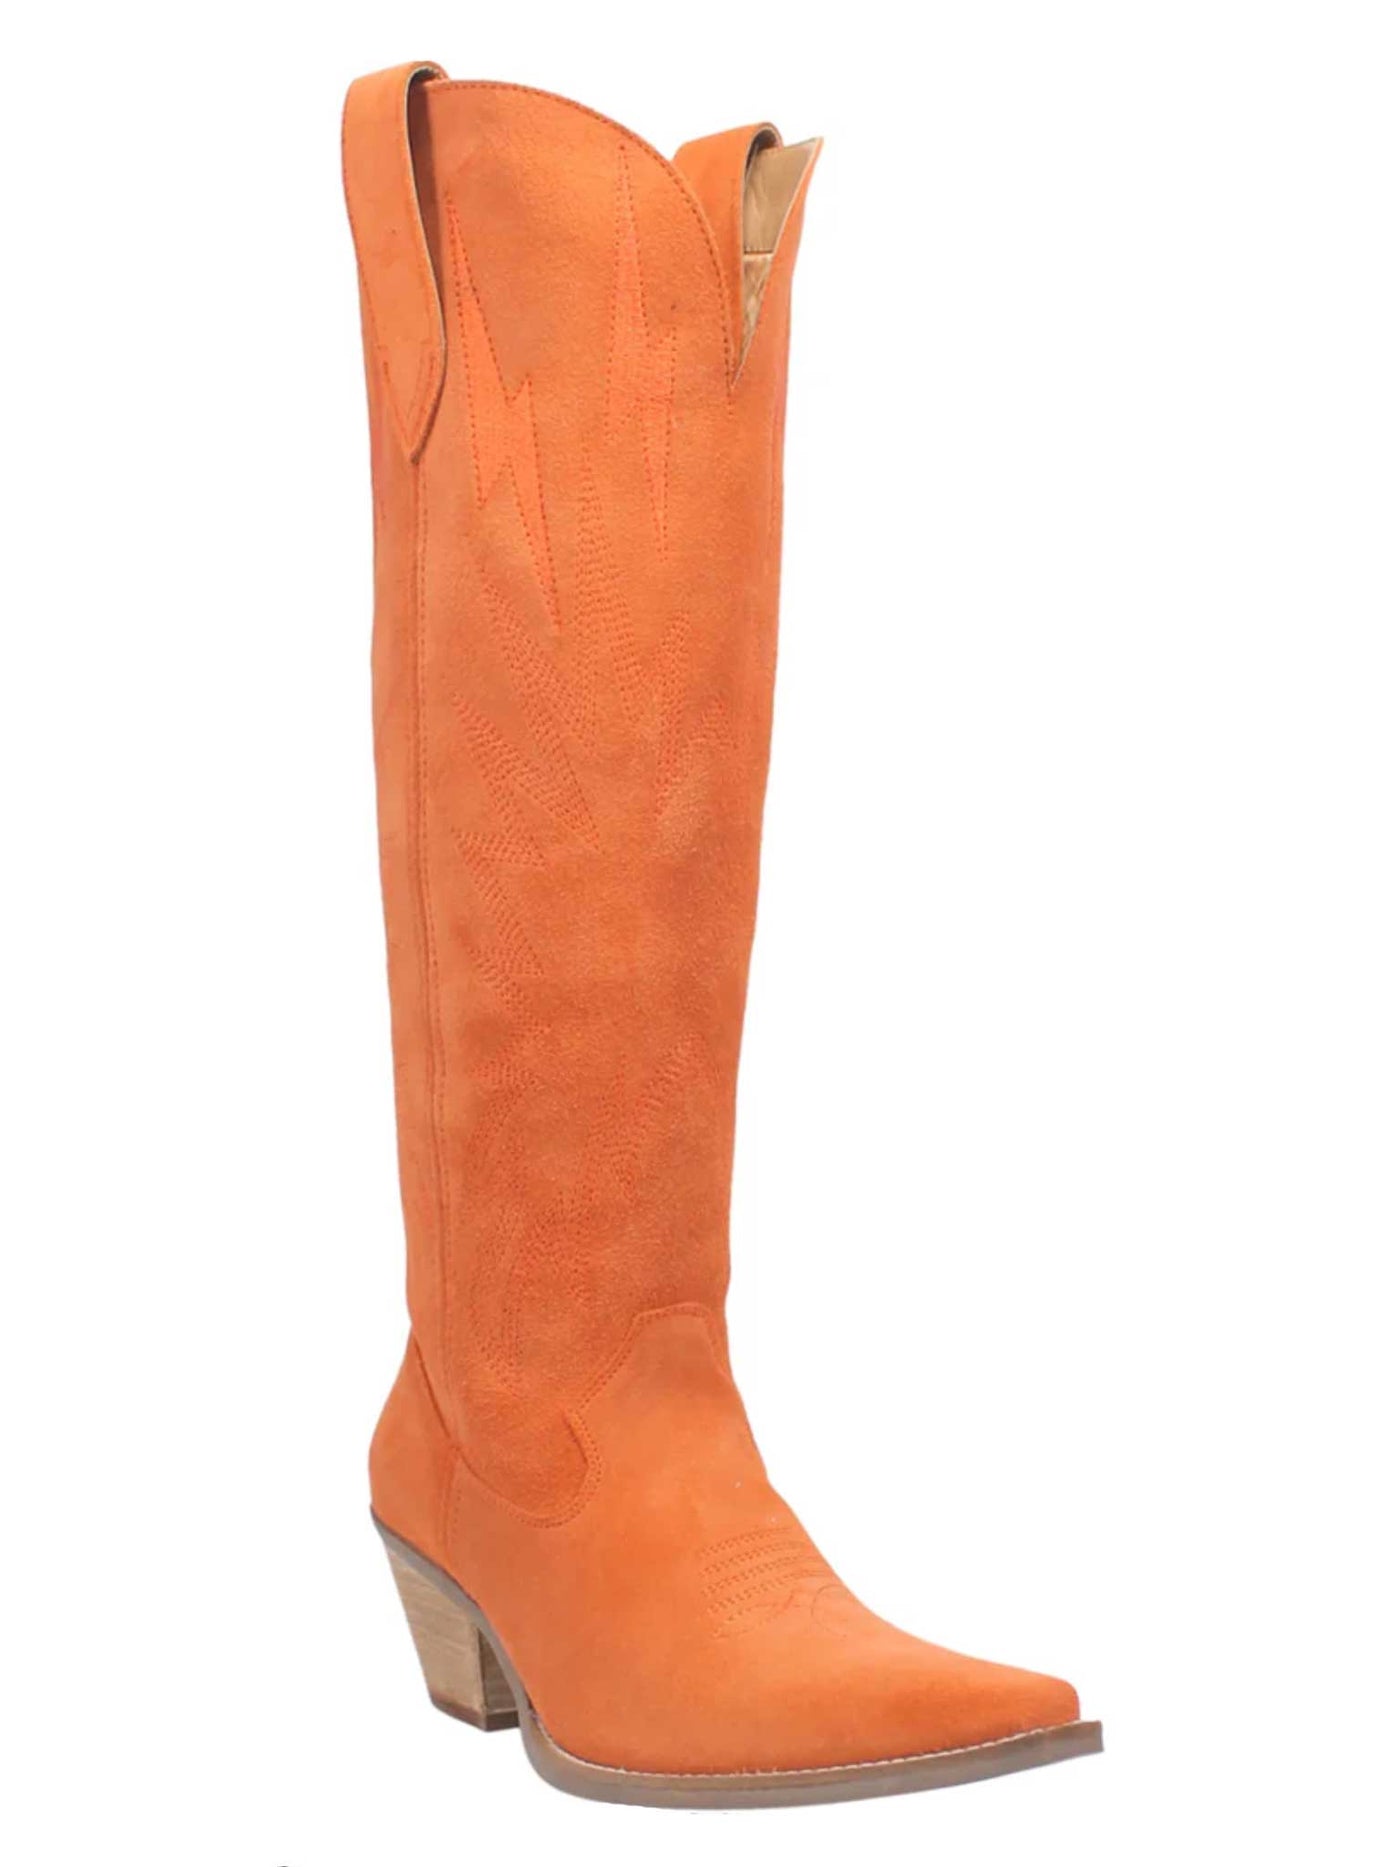 Thunder Road Orange Cowboy Boots